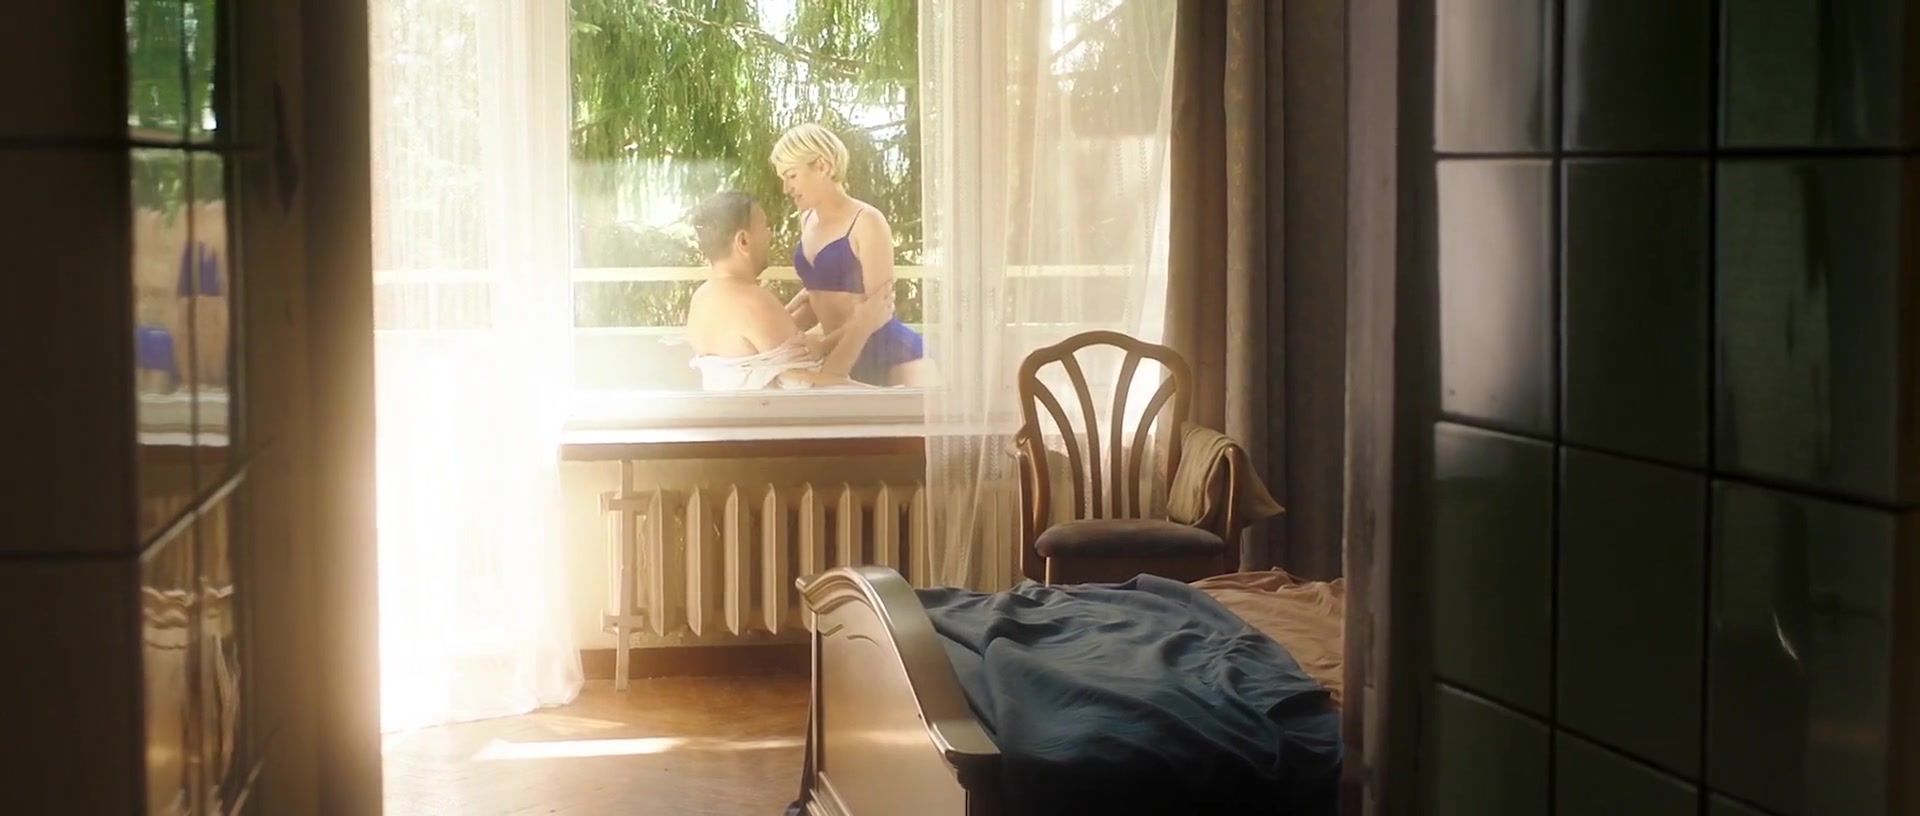 Creampies Taisiya Vilkova, Viktoriya Tolstoganova, Darya Zhovner, Polina Vitorgan nude - Sex scene from movie Vyshe neba (2019) Aussie